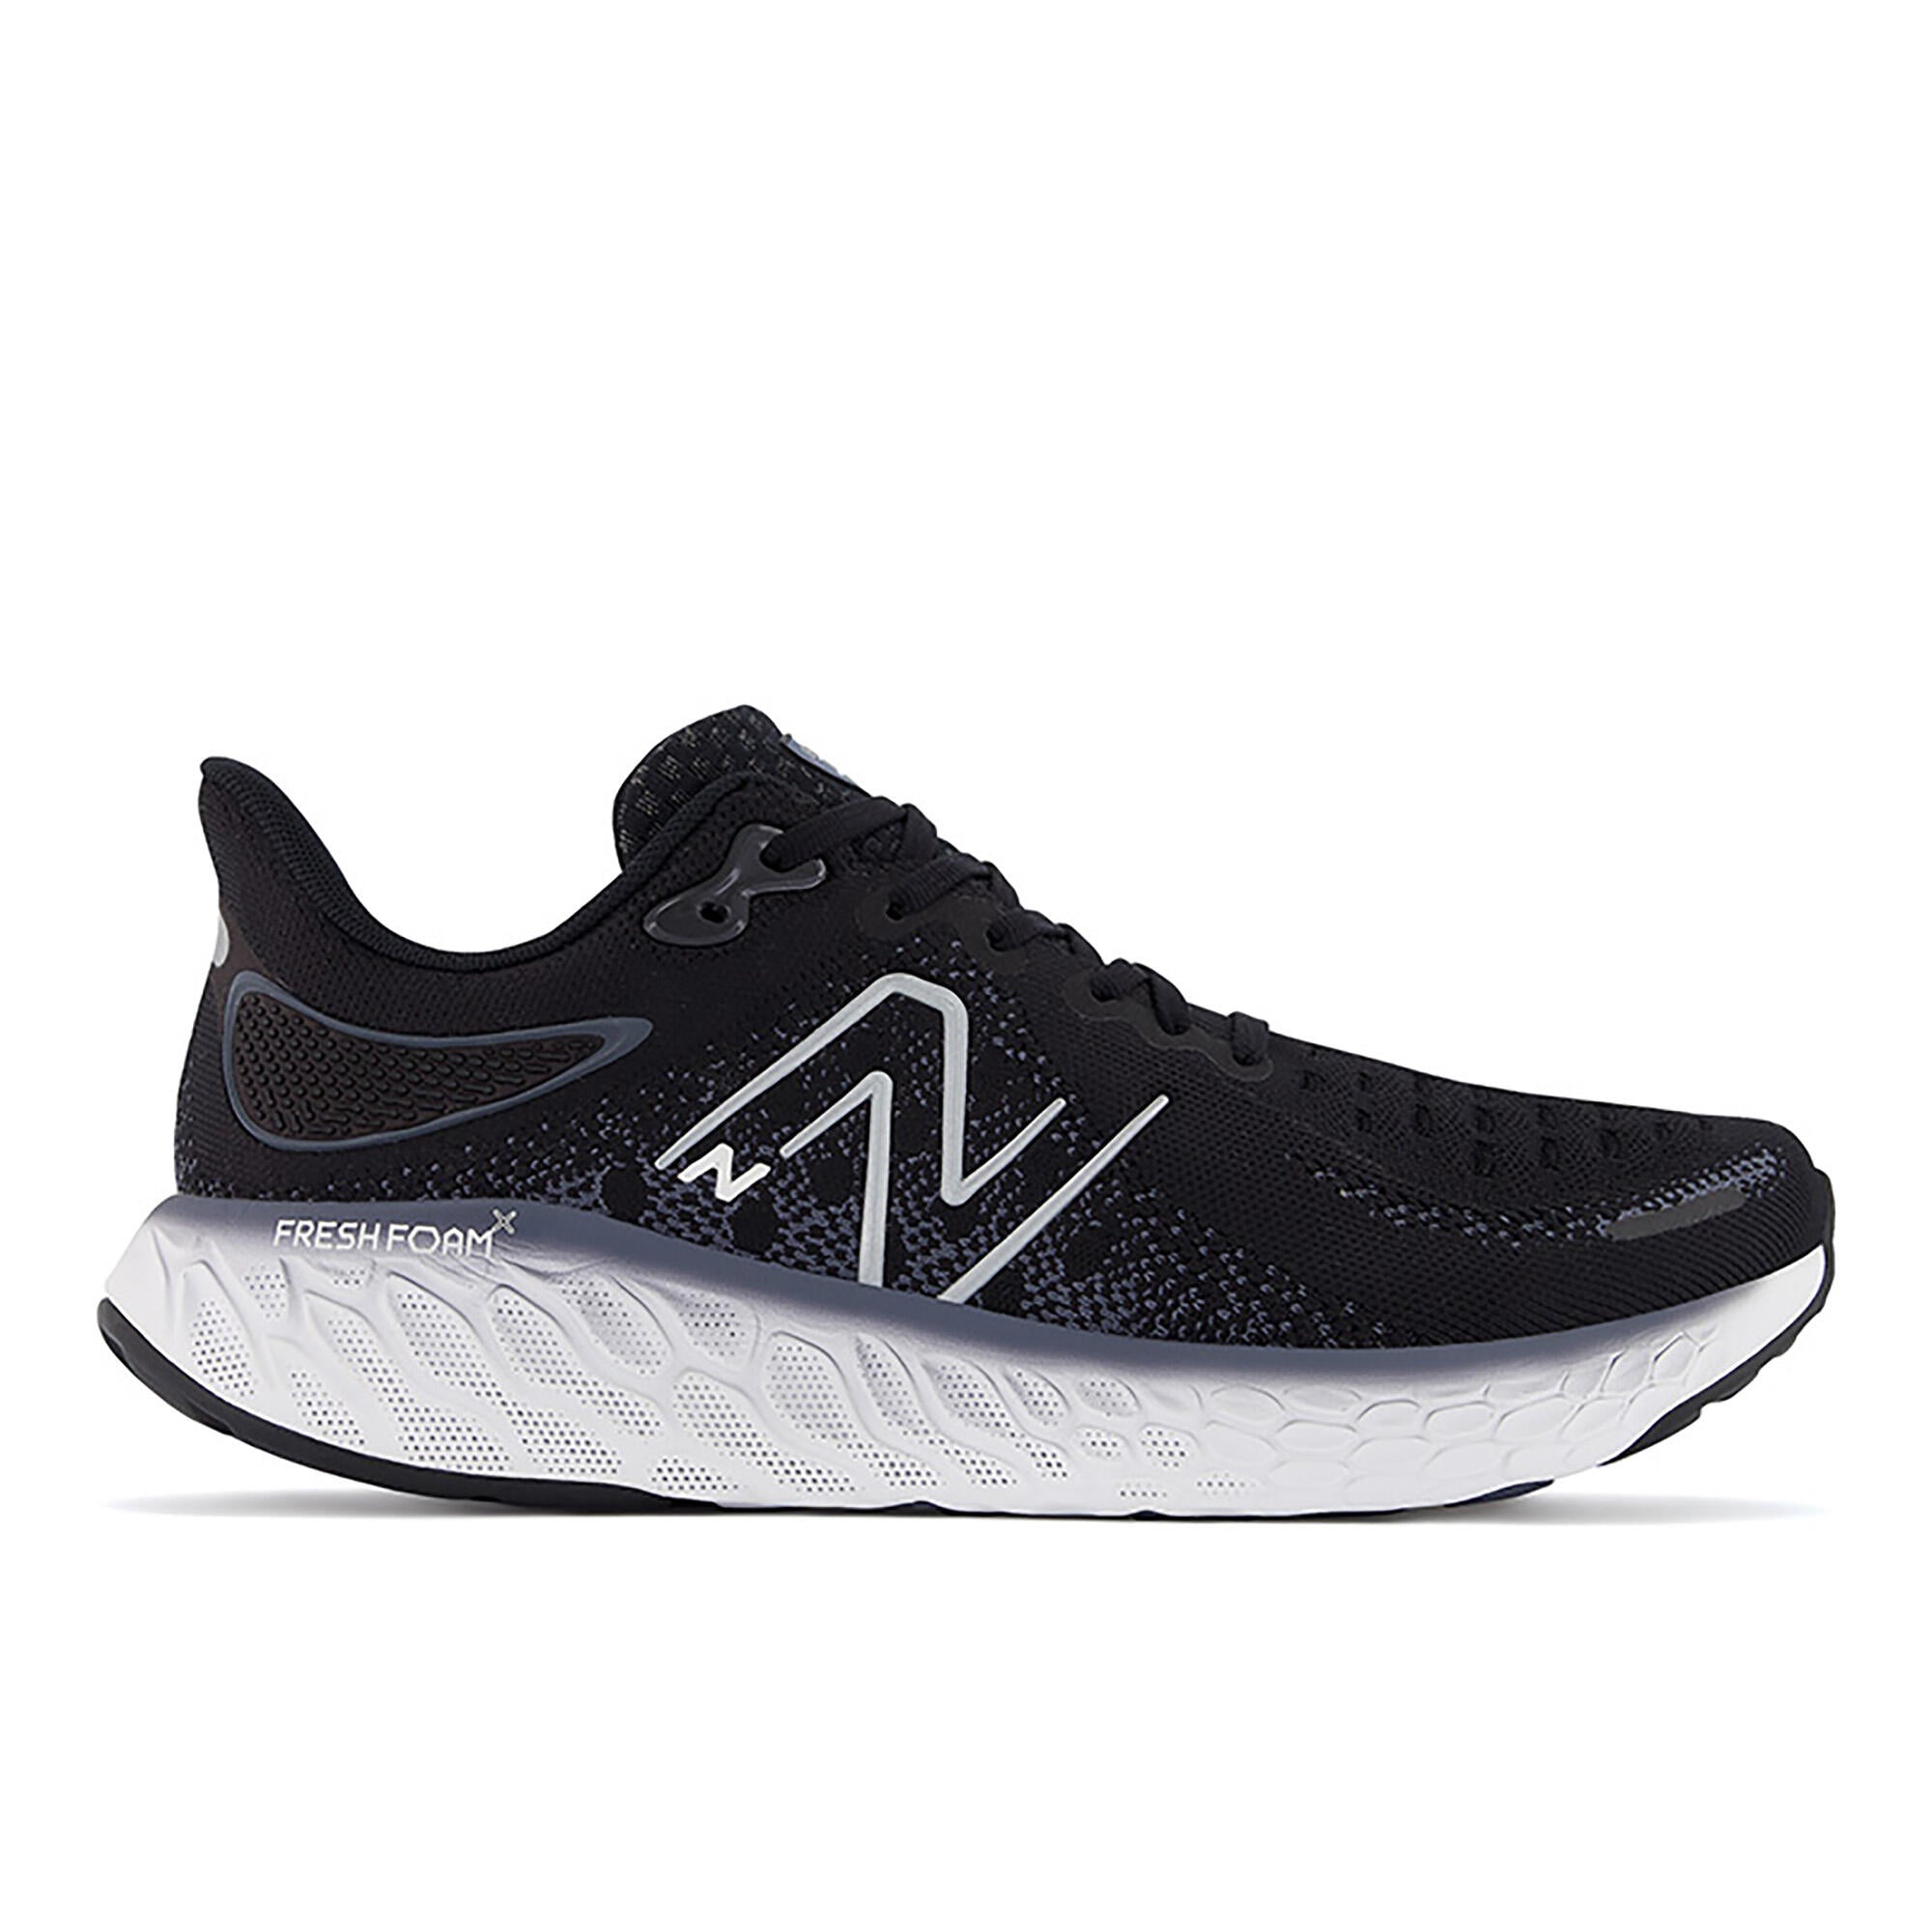 New Balance 1080 V12 Men's Running Shoes - Black/Thunder | Source for ...